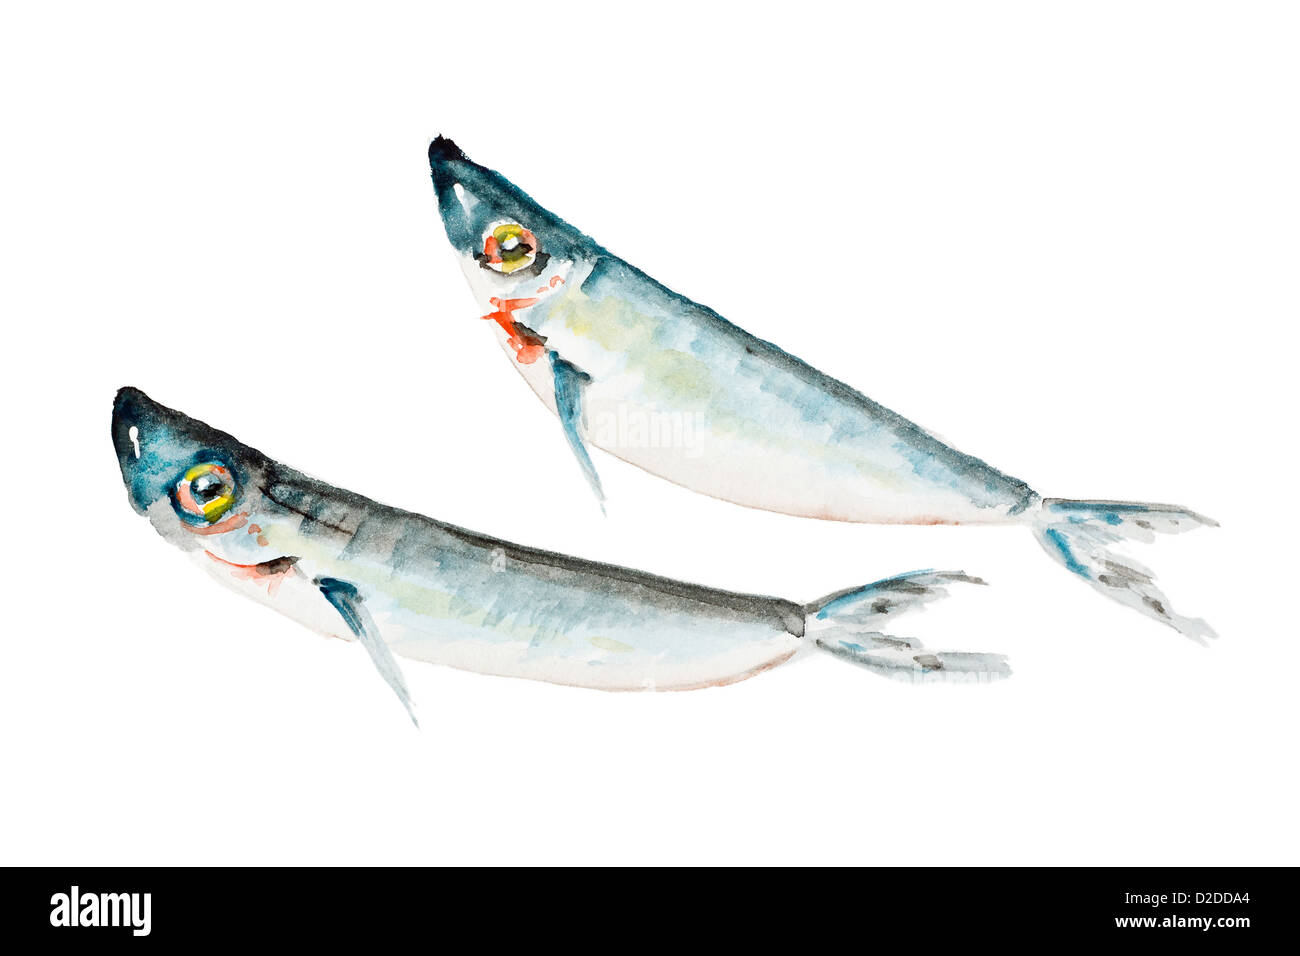 Deux petites sardines à l'eau salée des poissons morts isolés fry- handmade aquarelle illustration sur un papier blanc art fond Banque D'Images